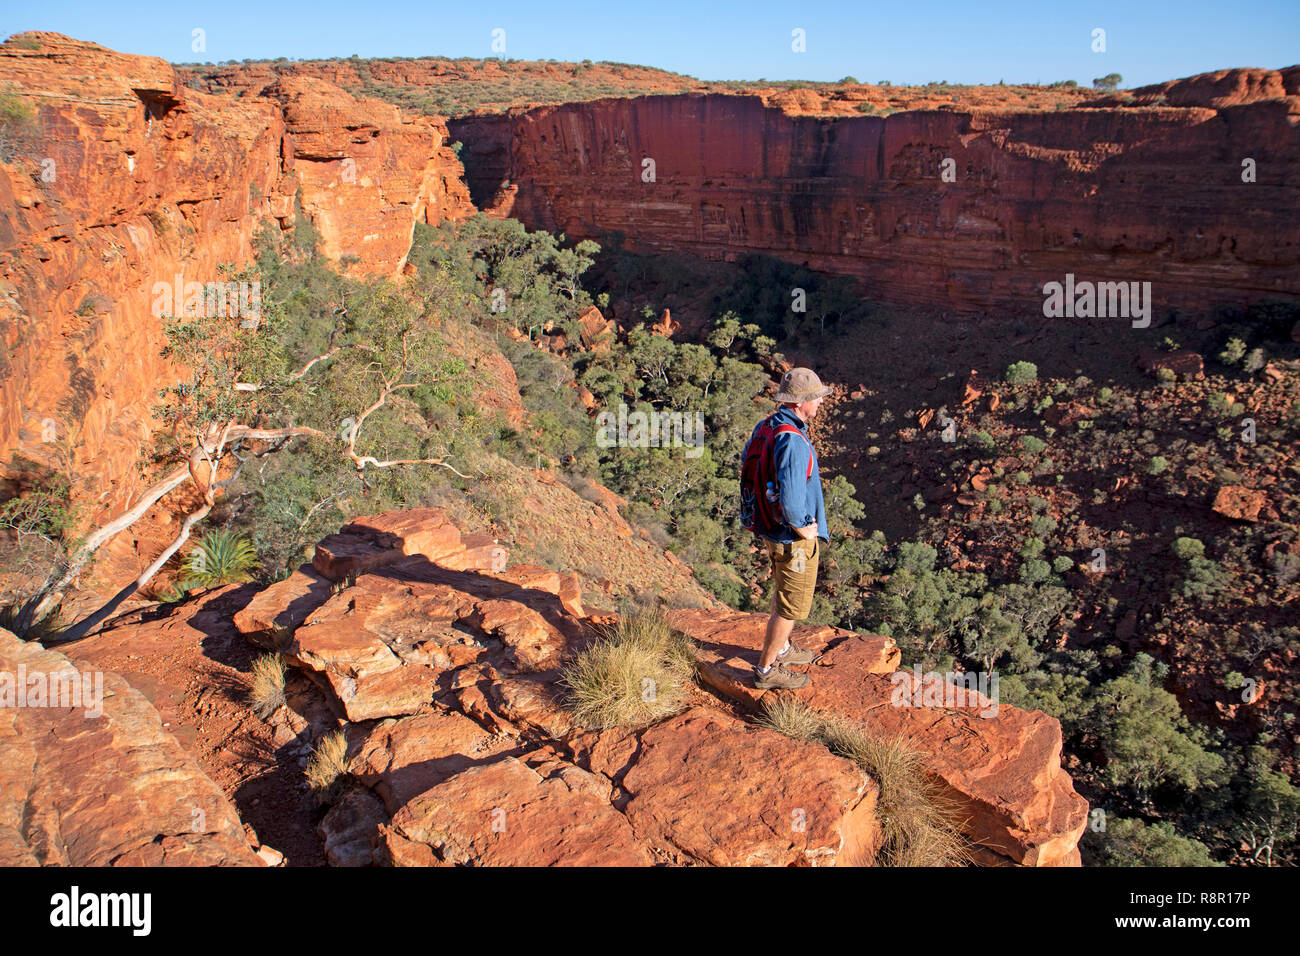 Watarrka National Park, il Territorio del Nord, l'Australia, 20/10/2018: un uomo in piedi al bordo del Kings Canyon Rim, guardando in giù nel canyon Foto Stock